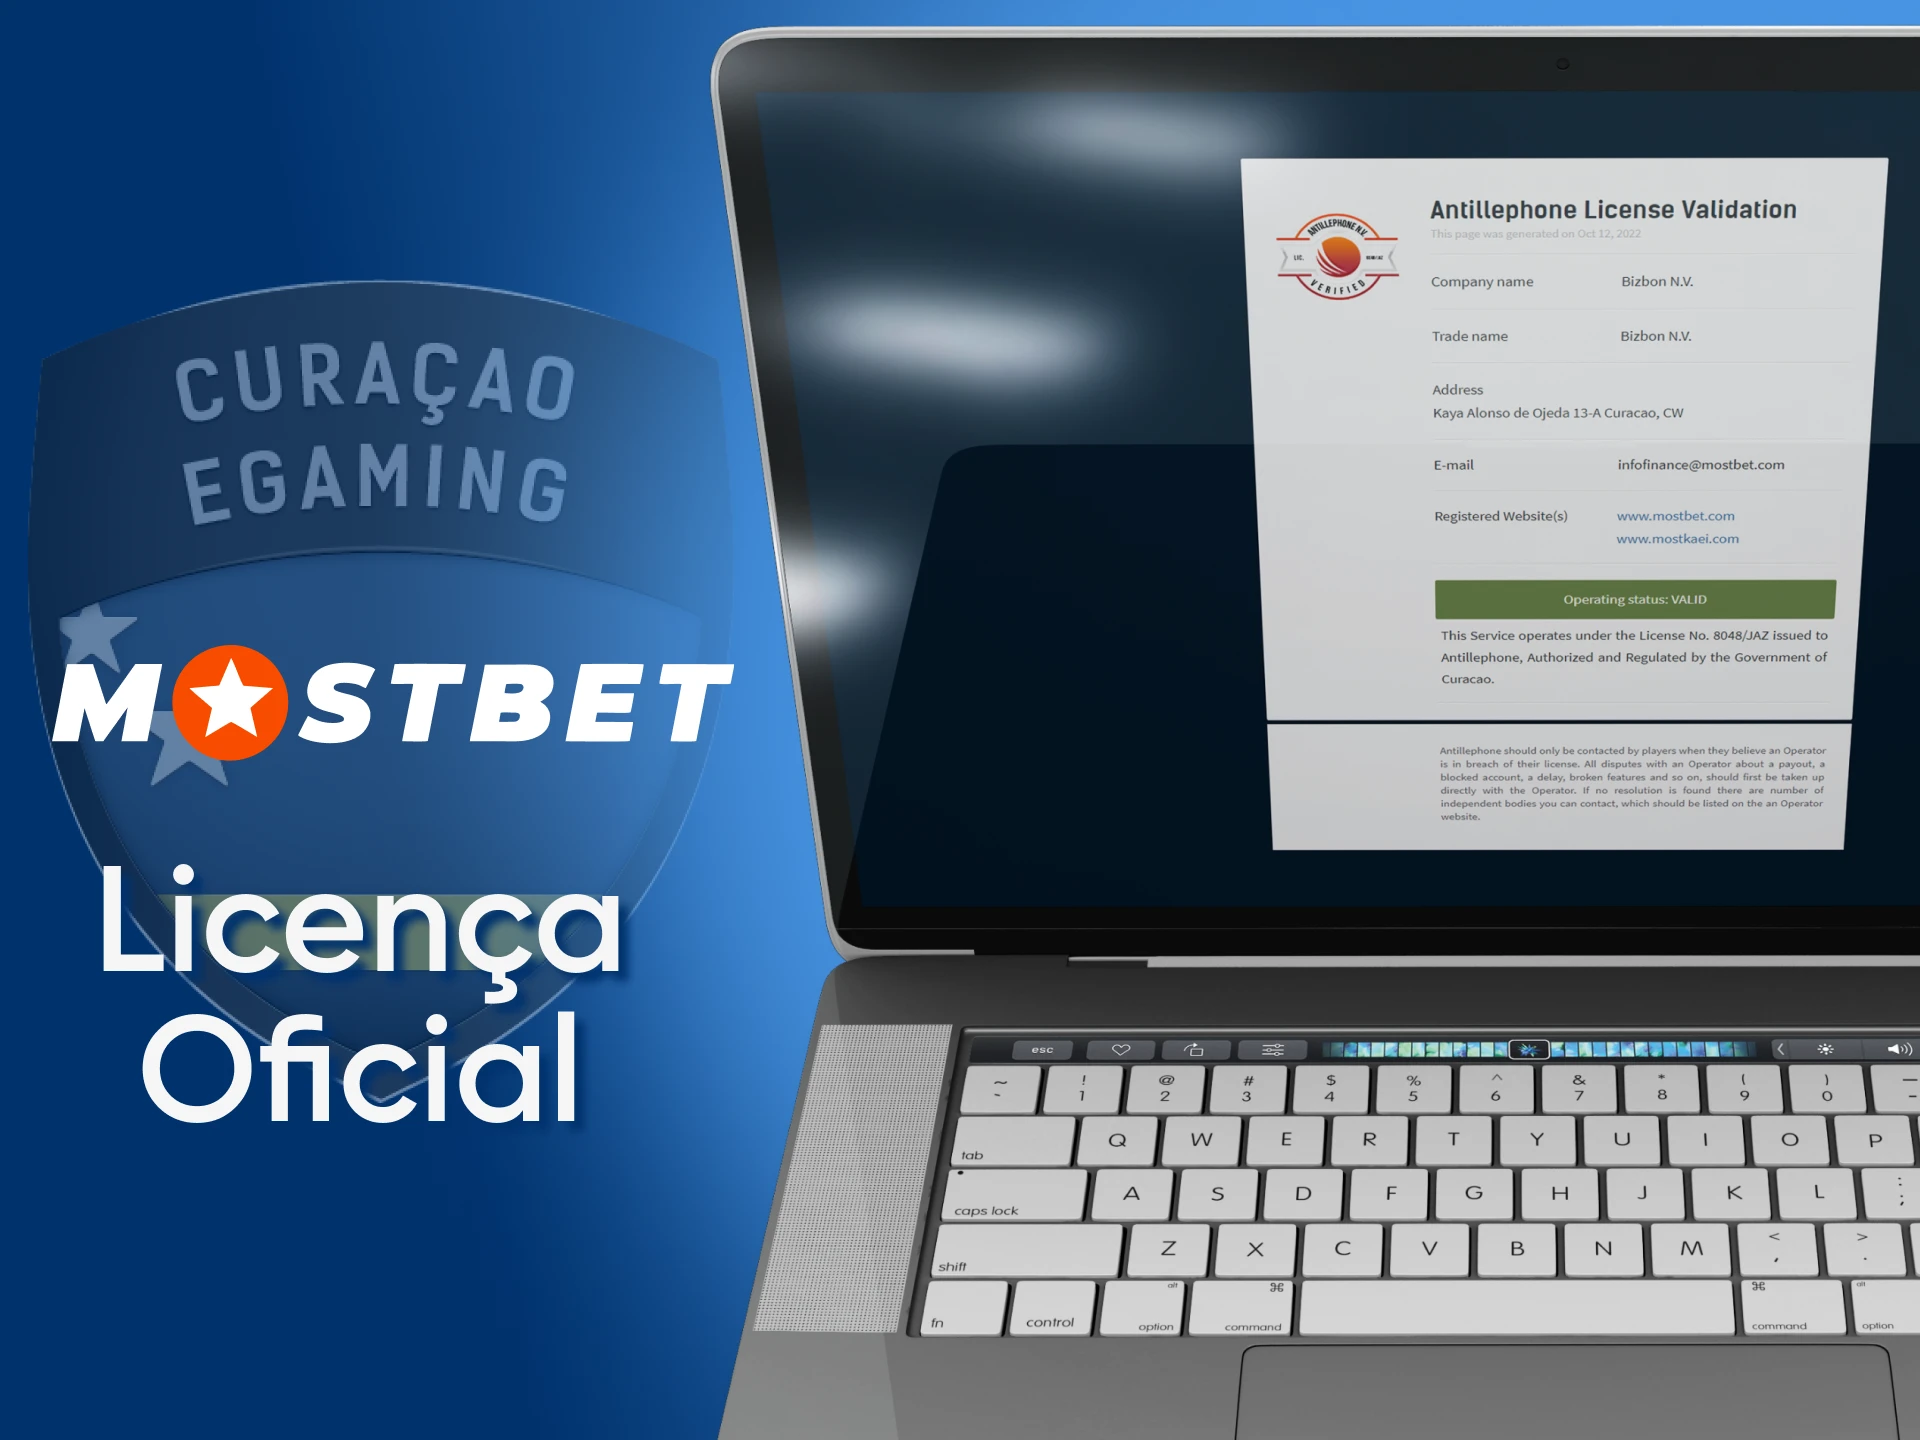 A Mostbet recebeu uma licença de Curaçao para apostas esportivas e cassinos.